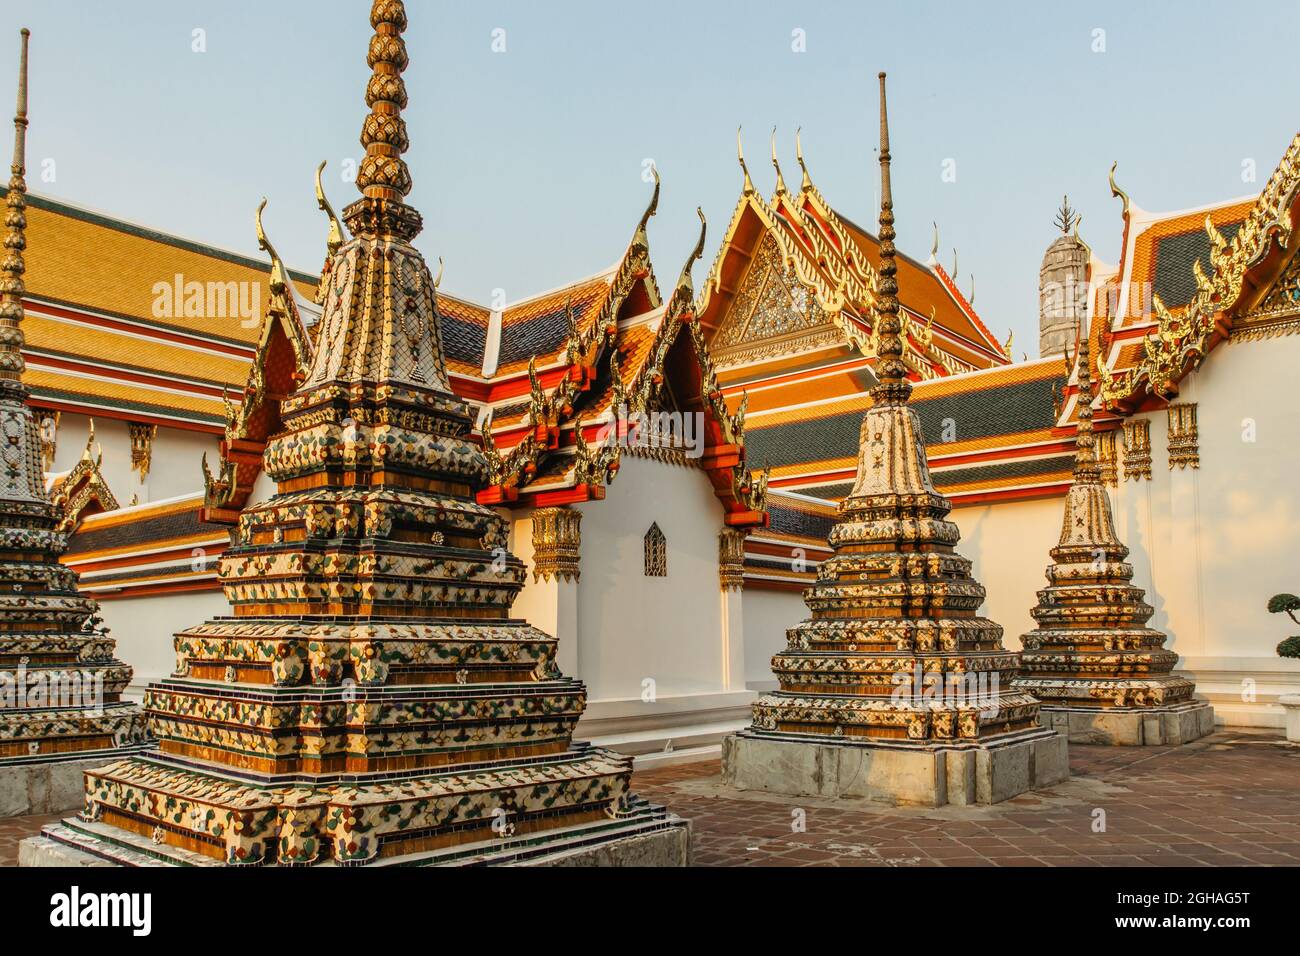 Bangkok, Thailand - Januar 17,2020.Wat Pho, alter buddhistischer Tempelkomplex mit liegender Buddha.Beliebte Touristenattraktion enthält mehrere Hallen Stockfoto